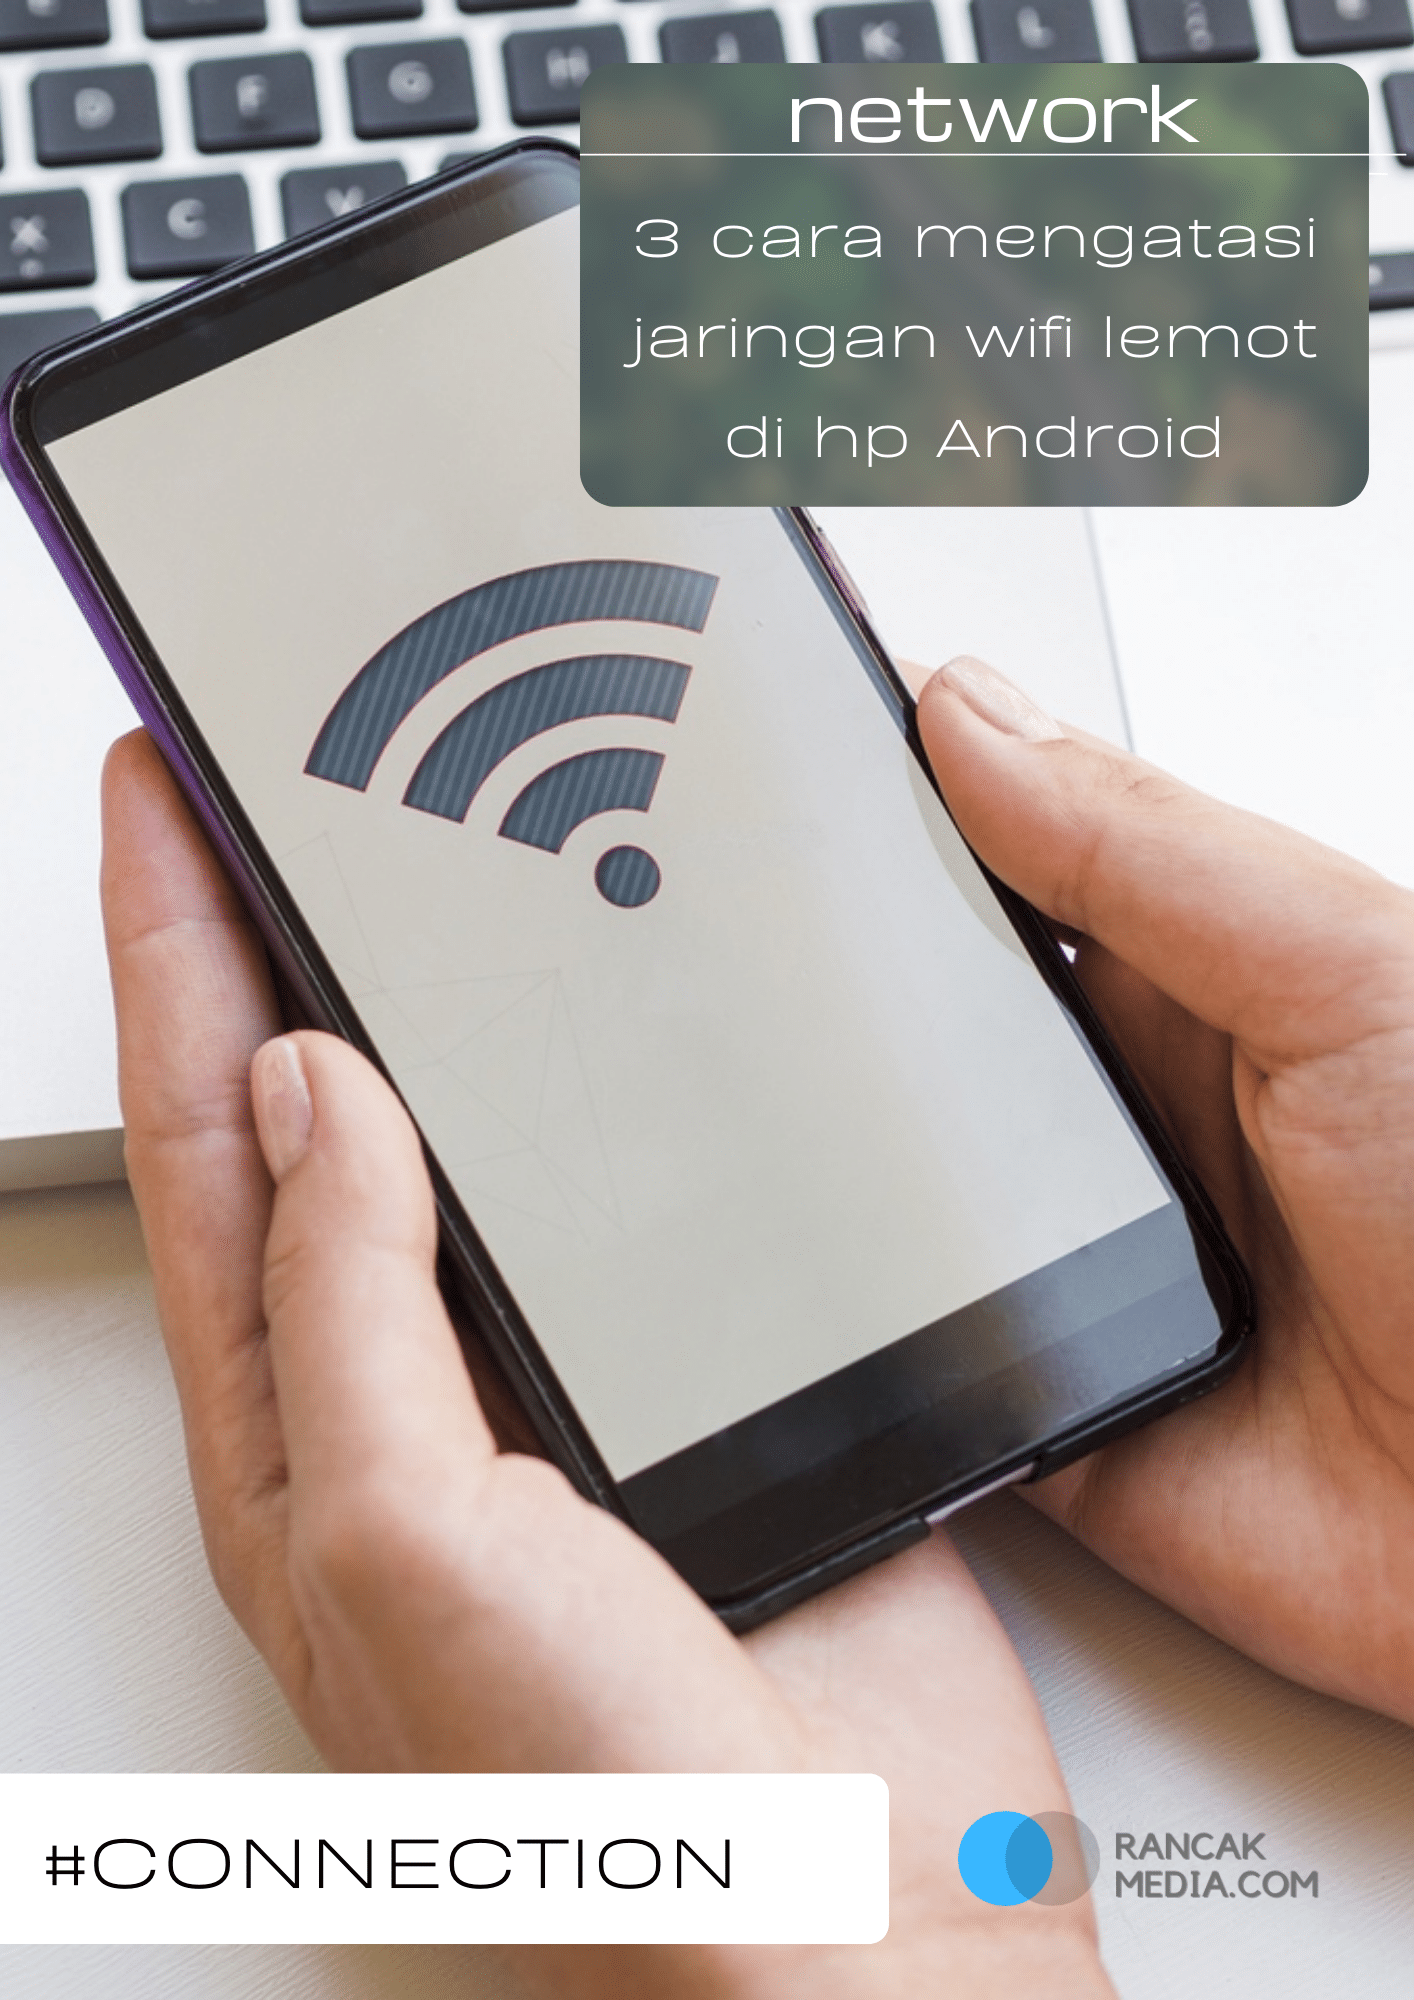 Cara Mengatasi Wifi Lemot. 3 Cara Mengatasi Jaringan Wifi Lemot di Hp Android